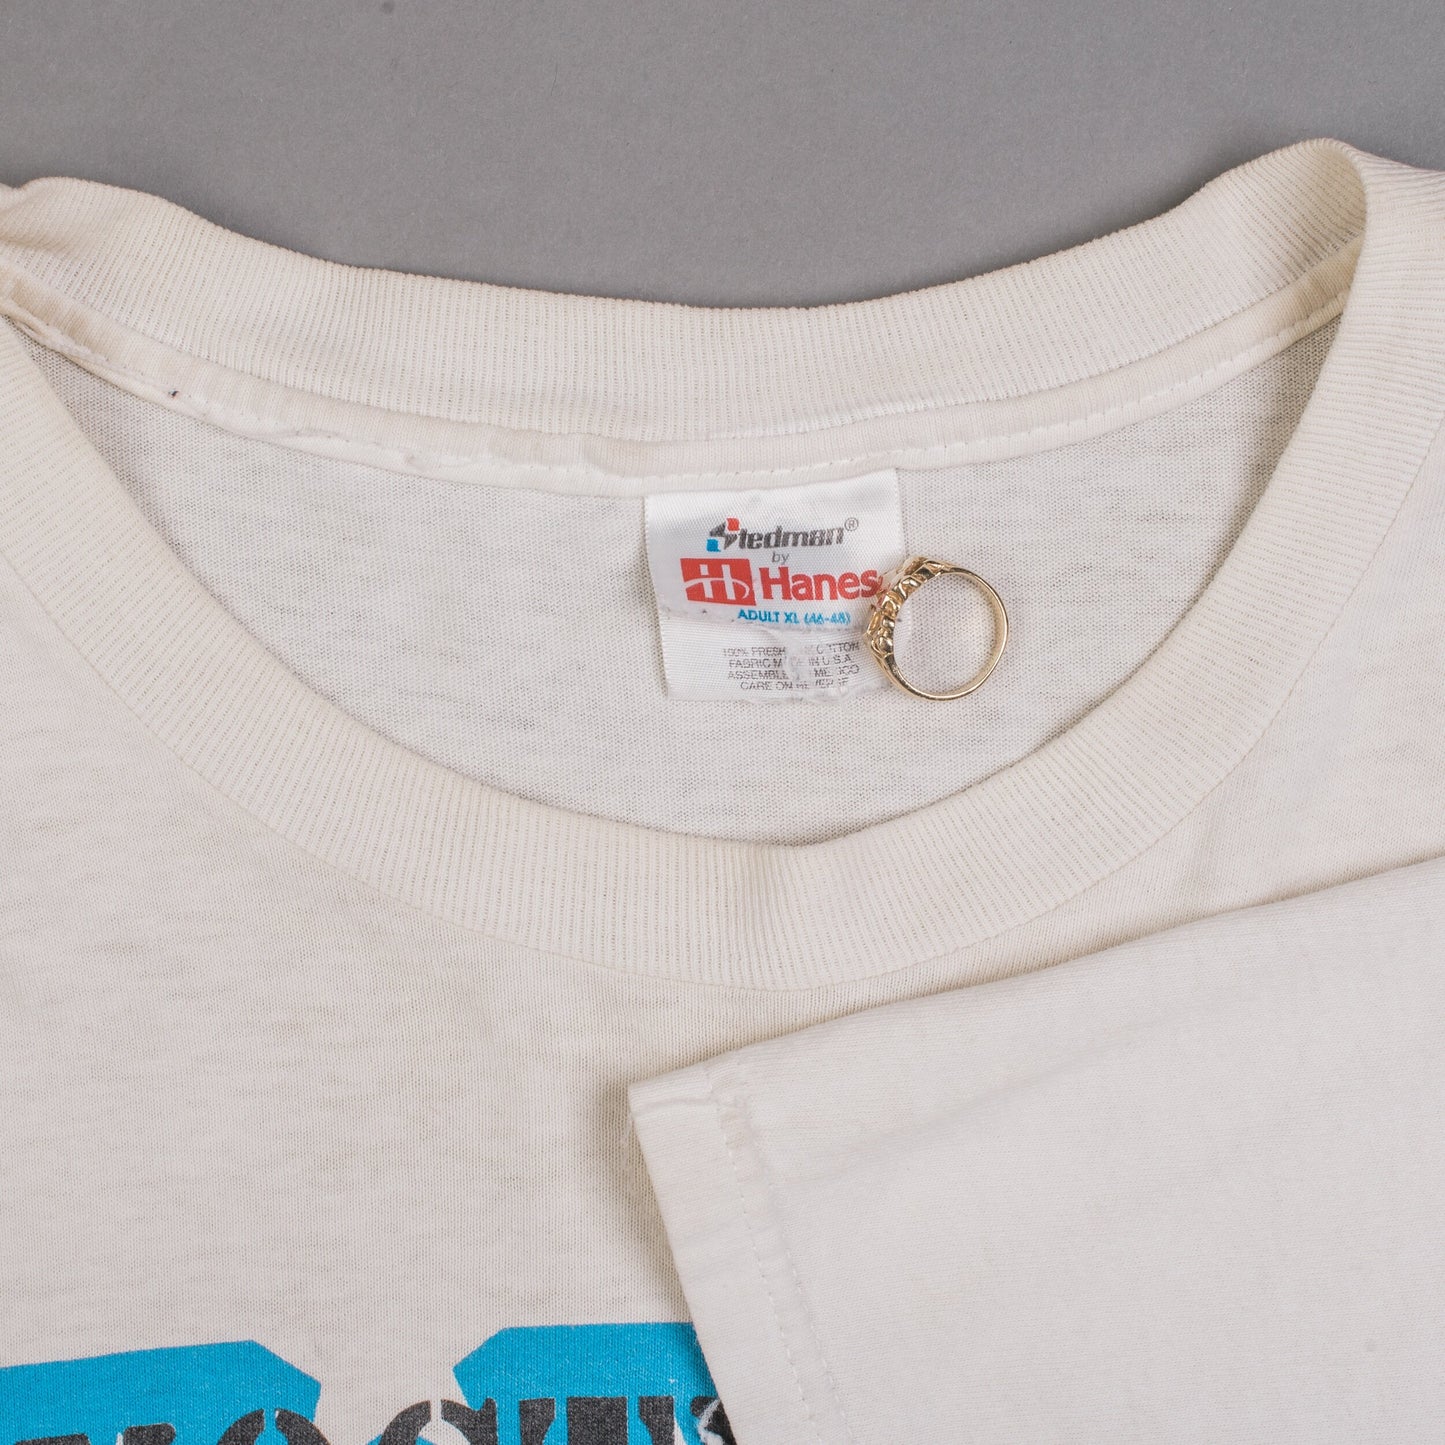 Vintage 90’s Agnostic Front Live At CBGB T-Shirt